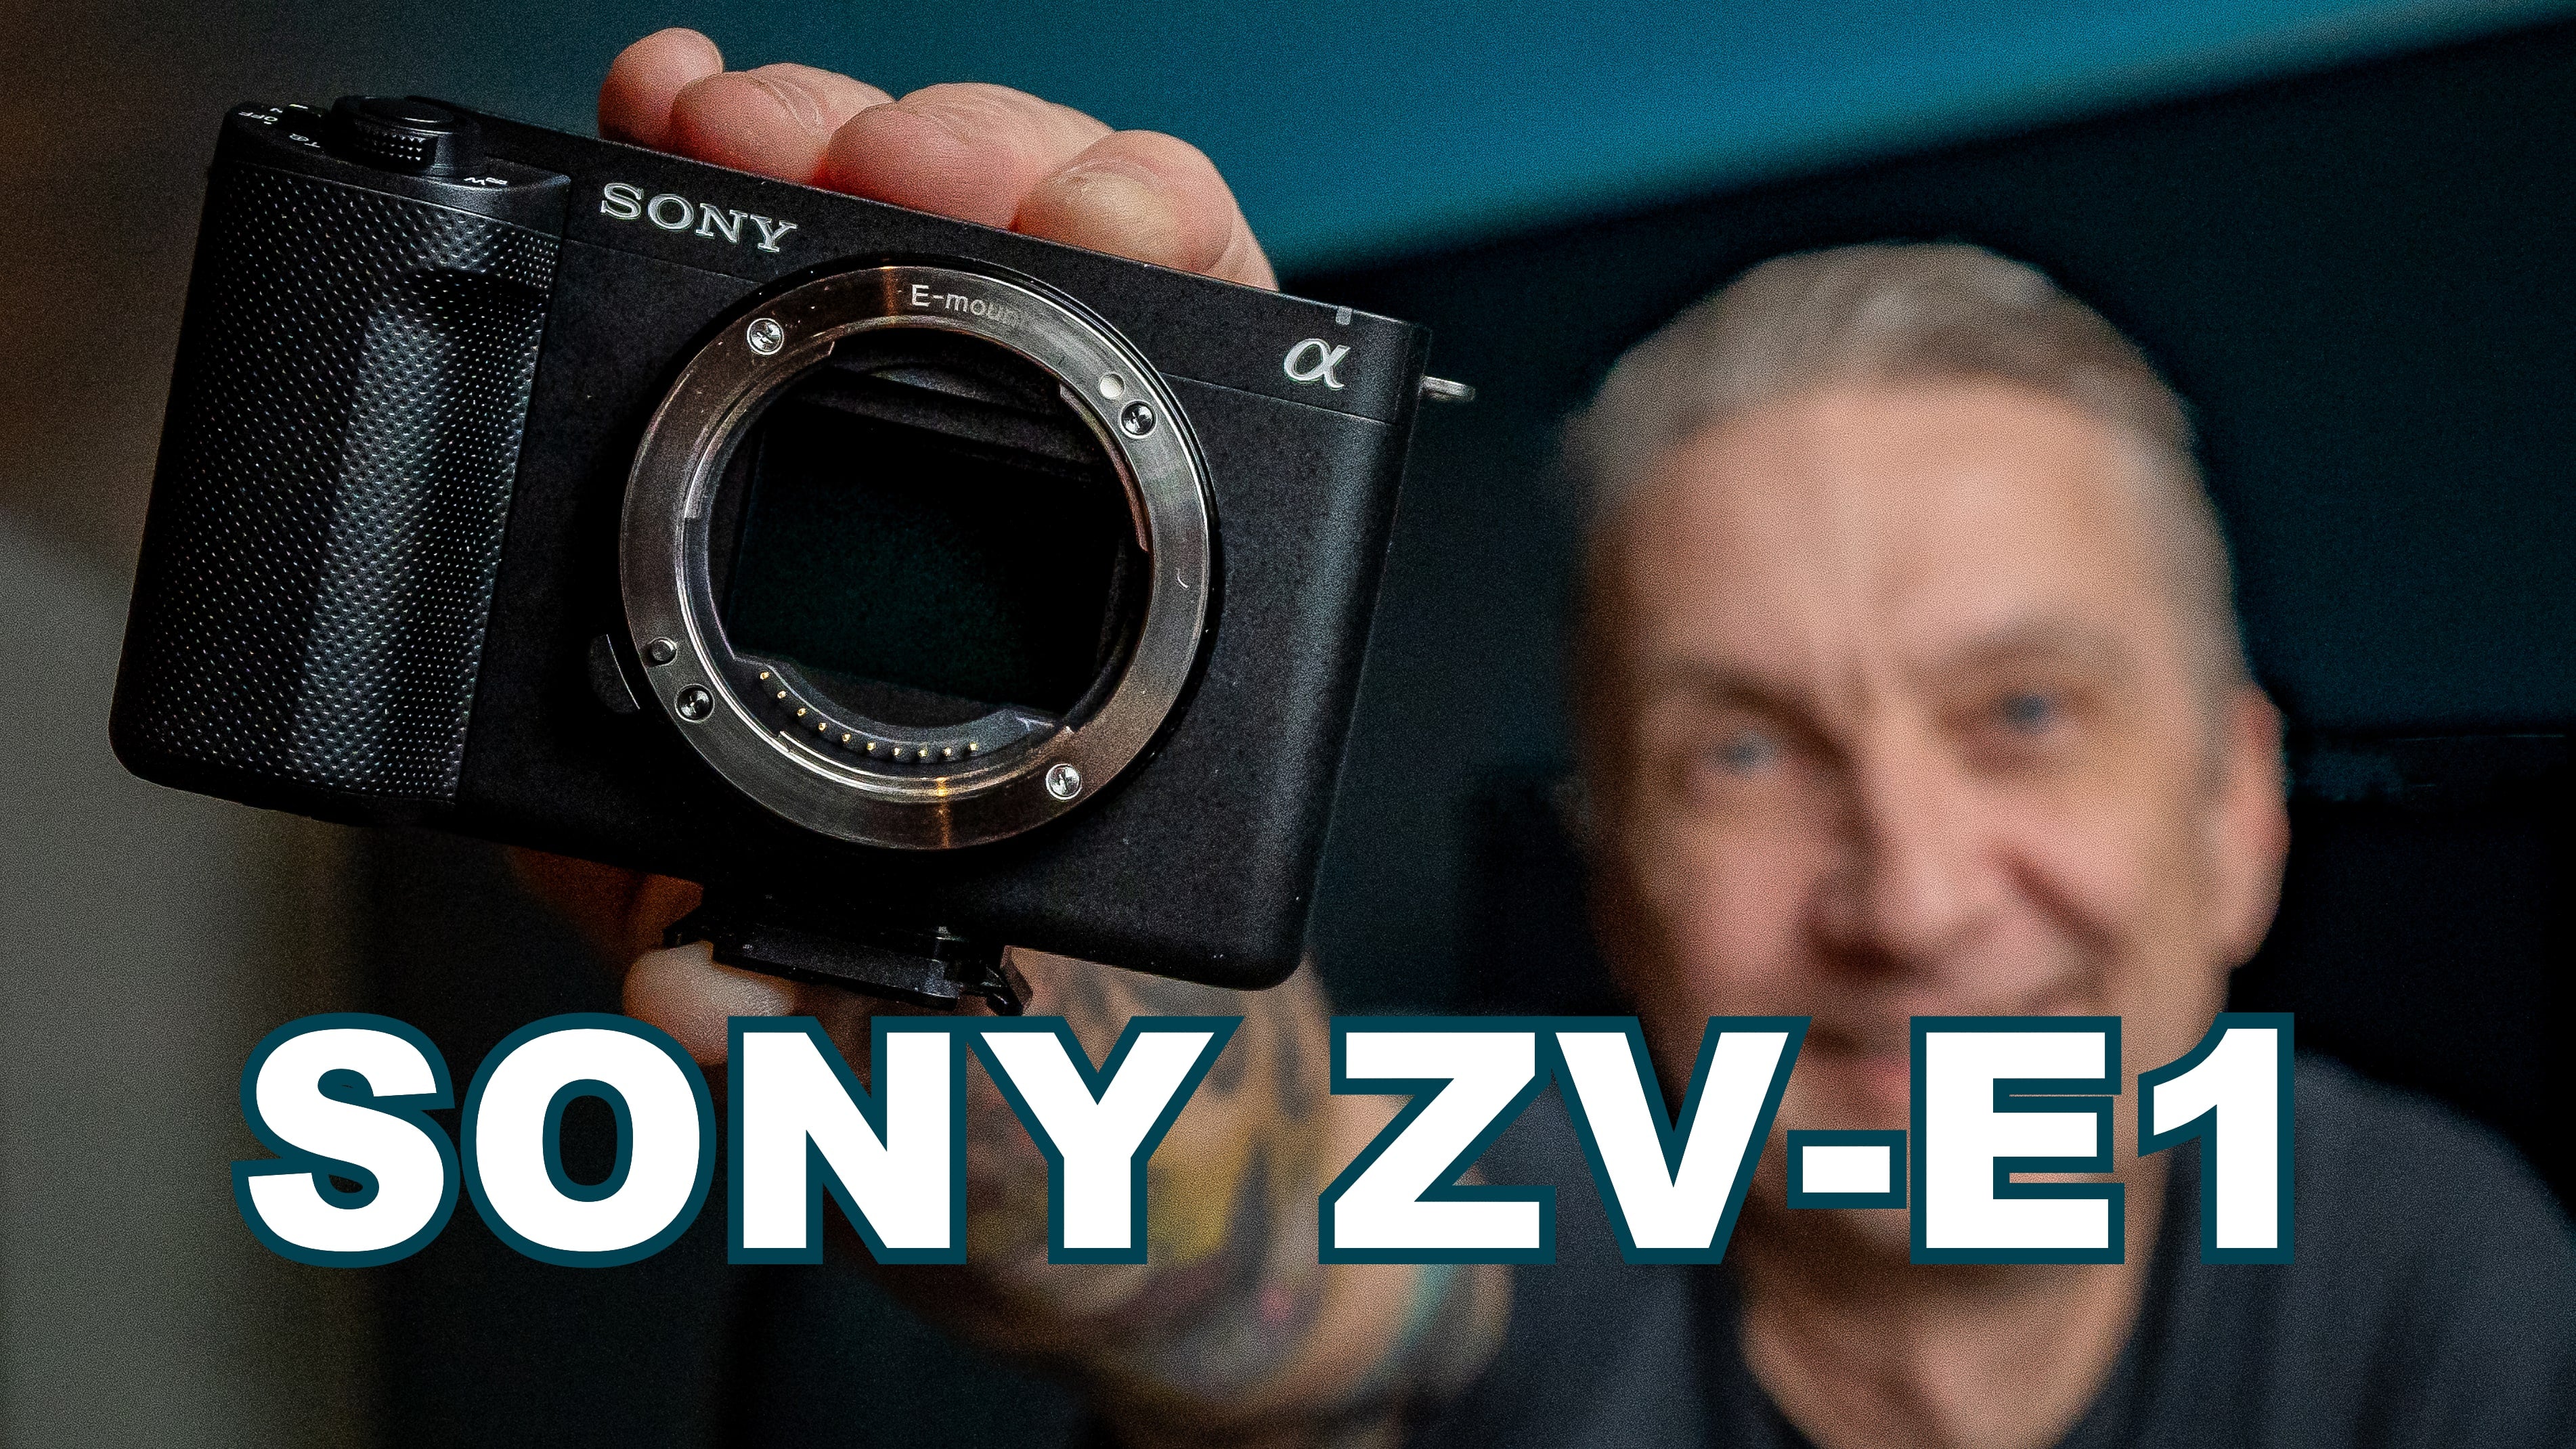 Load video: Sony ZV-E1 är en fullformatskamera med en grym uppsättning kreativa funktioner för filmskapare, content creators och vloggare. Den kameran handlar det om i den här videon.